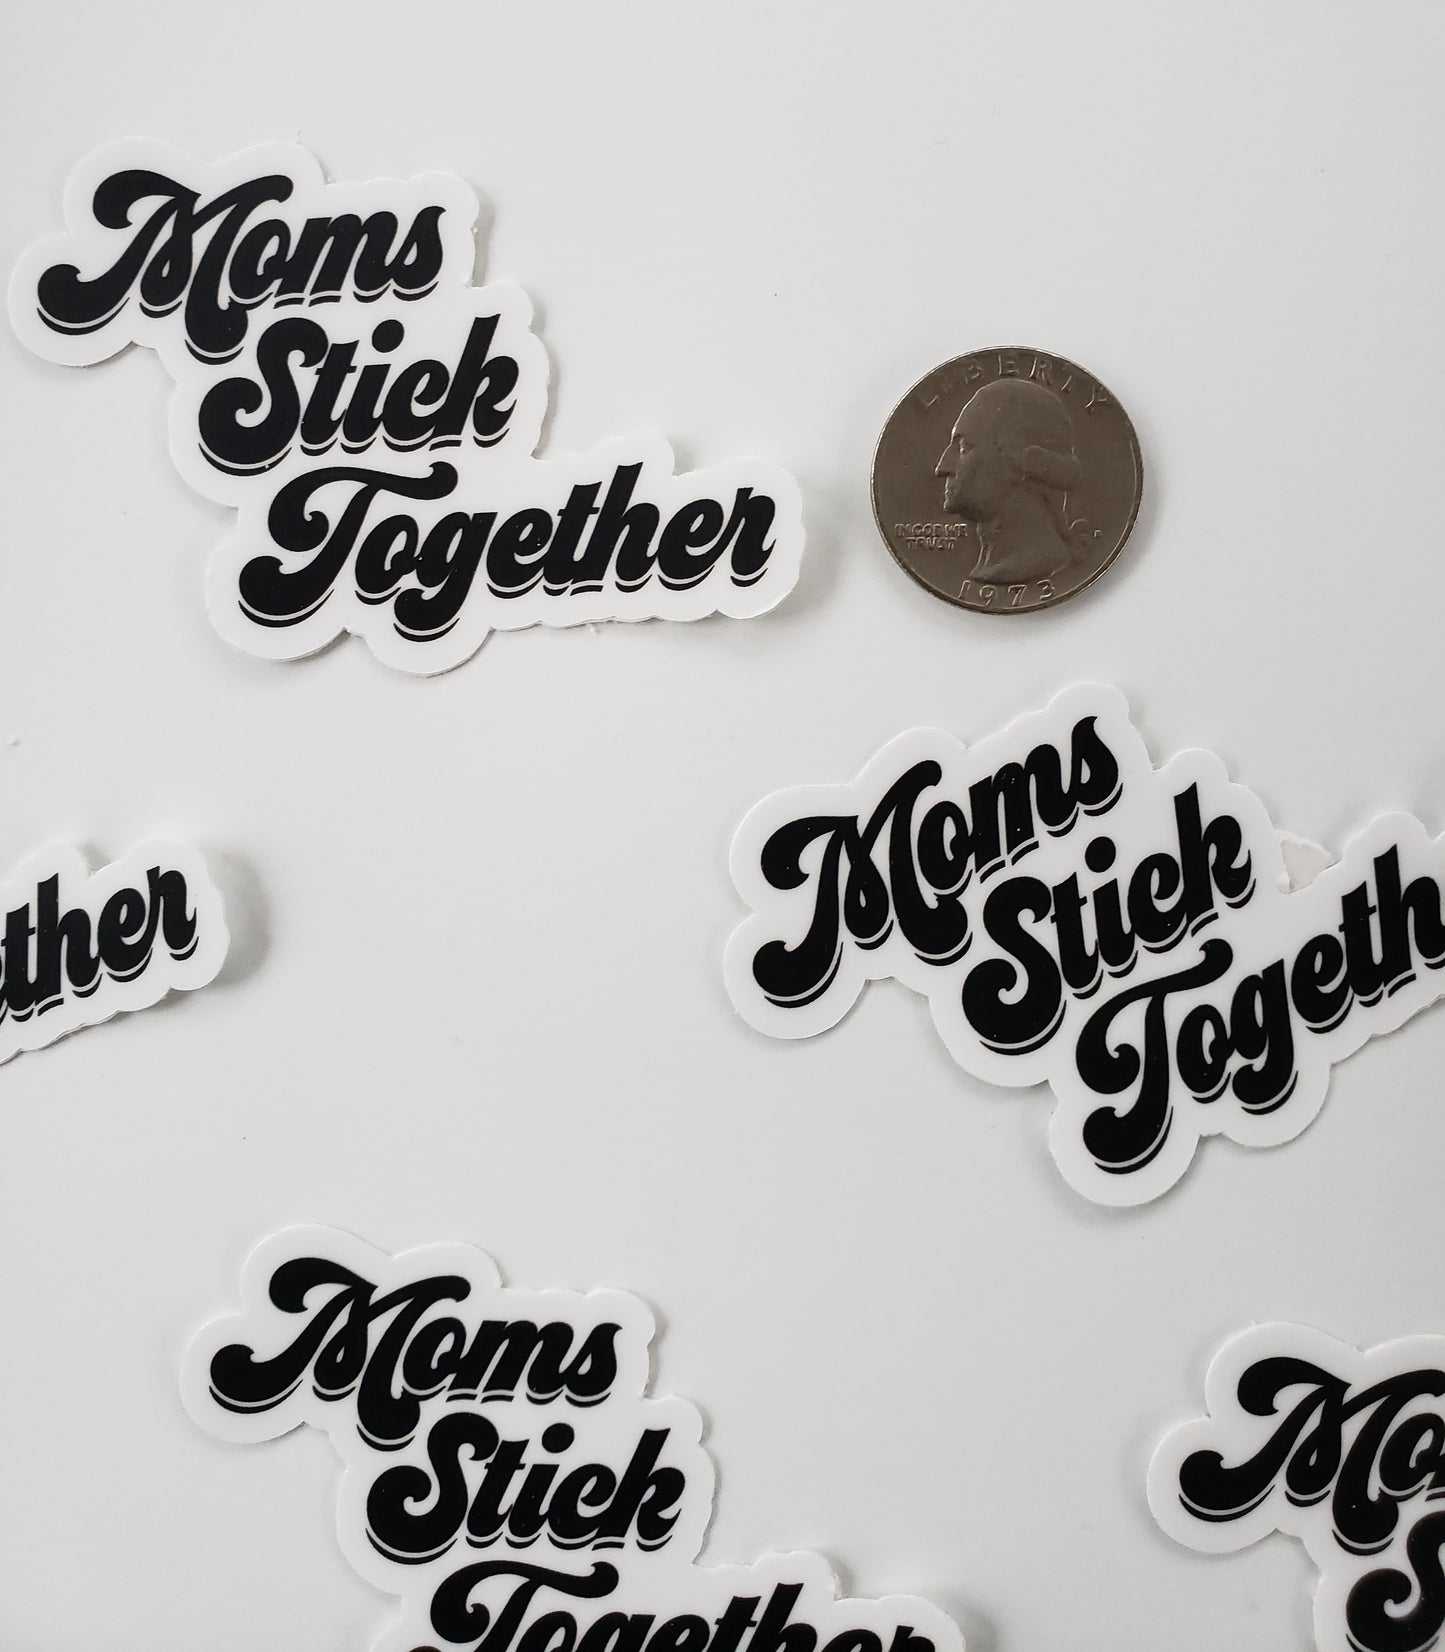 Moms Stick Together Vinyl Sticker